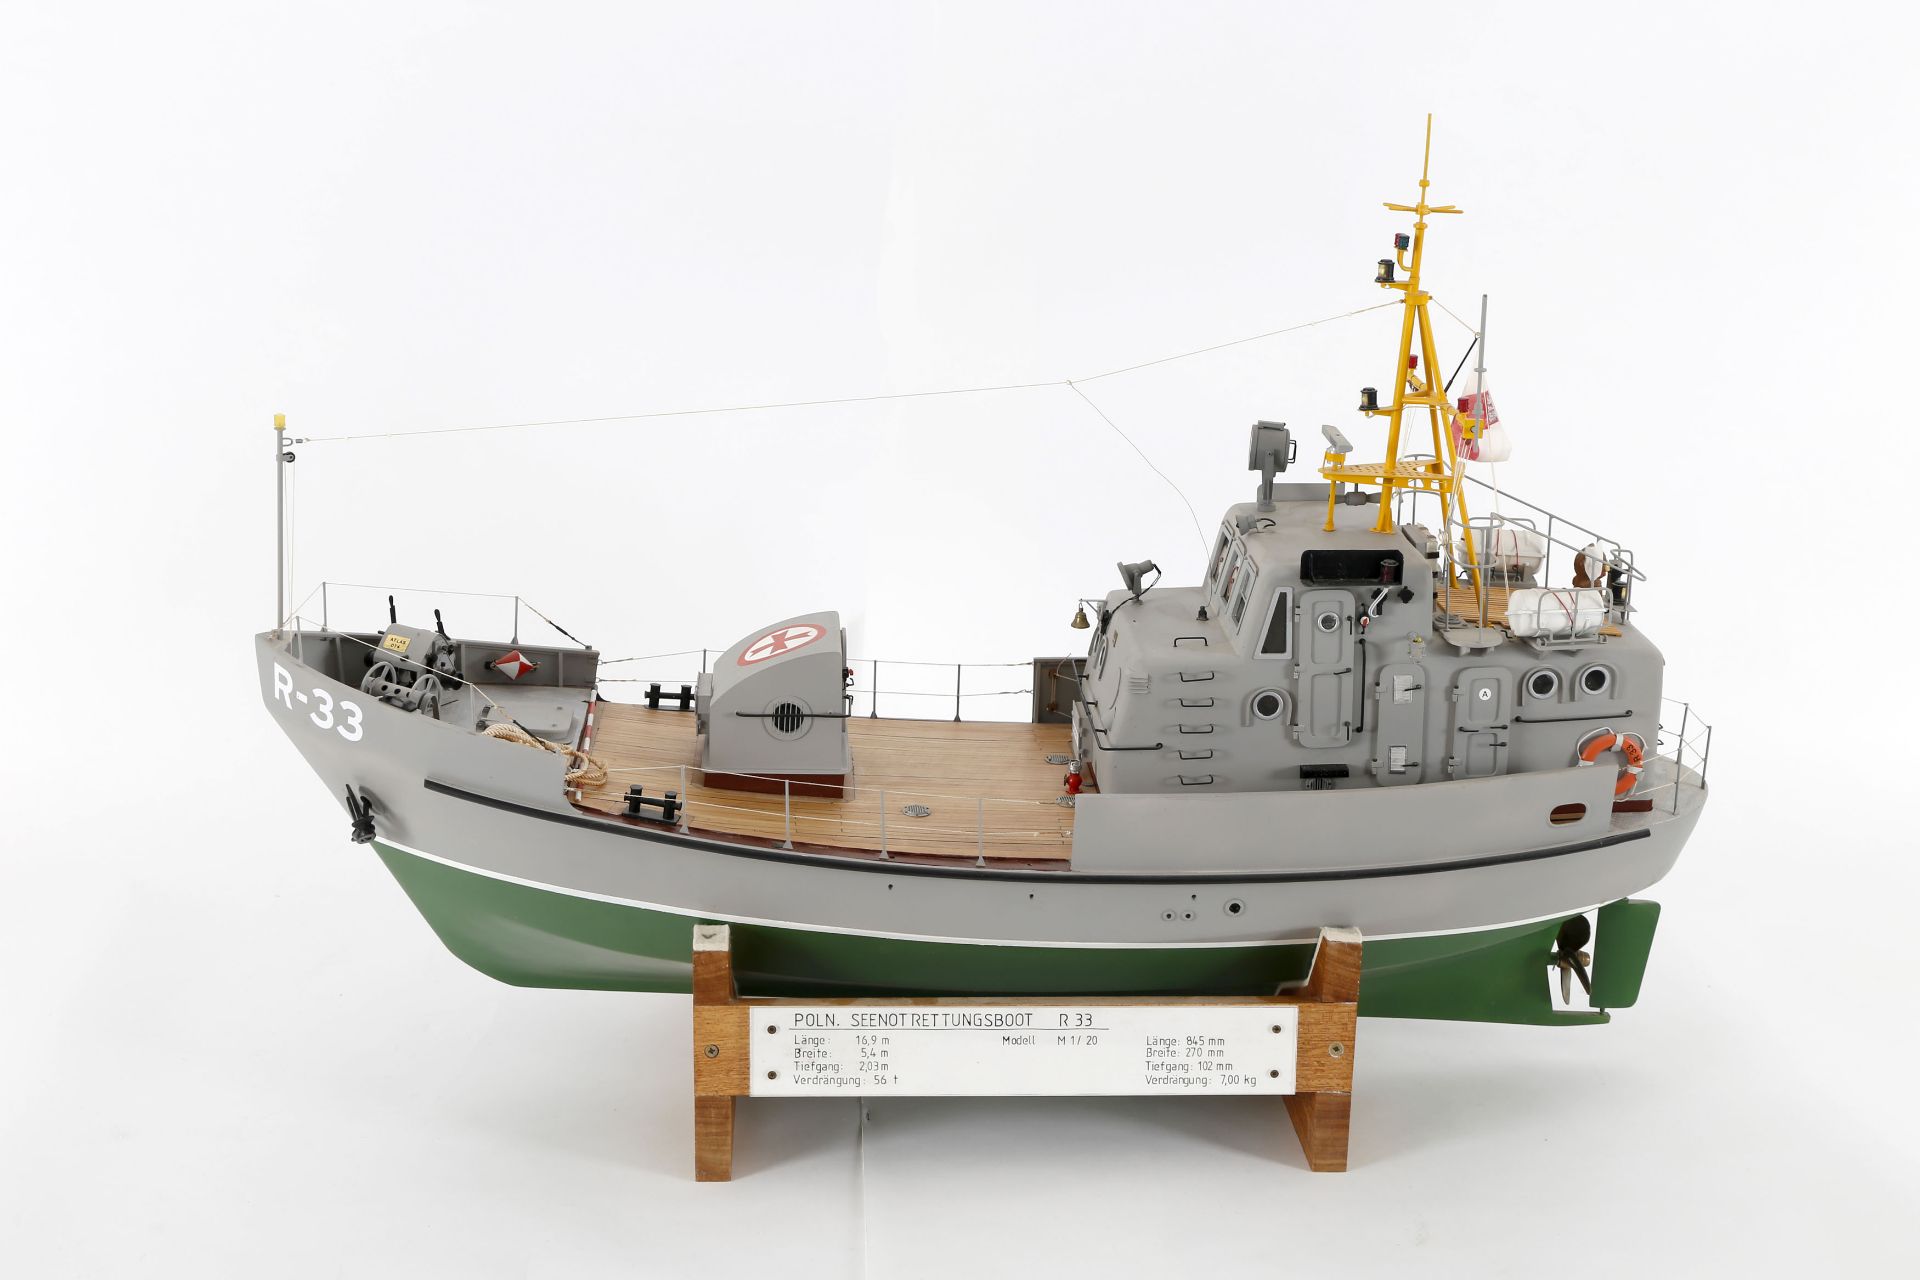 Modell des polnischen Rettungsbootes 'R 33'